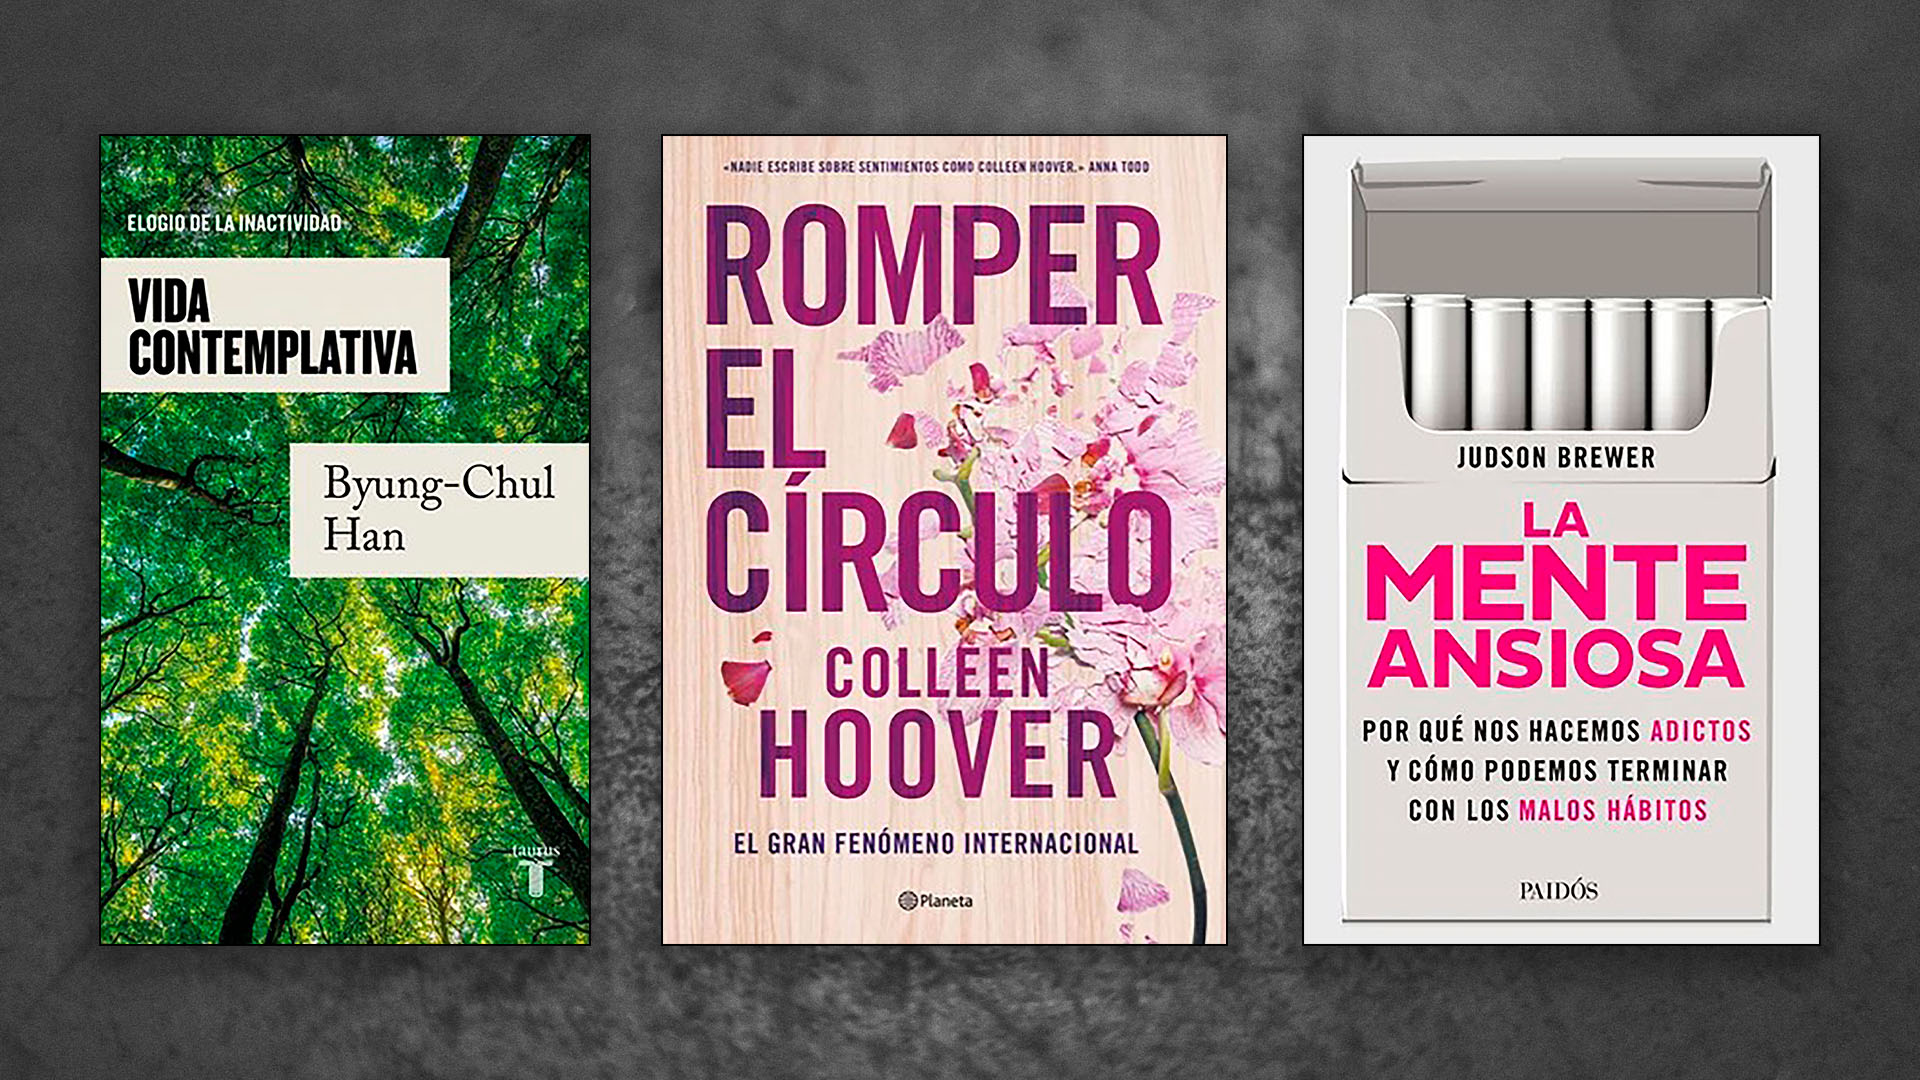 Qué leer el fin de semana: los bestsellers “La mente ansiosa”, “Romper el círculo” y “Vida contemplativa” por menos de 1.200 pesos argentinos